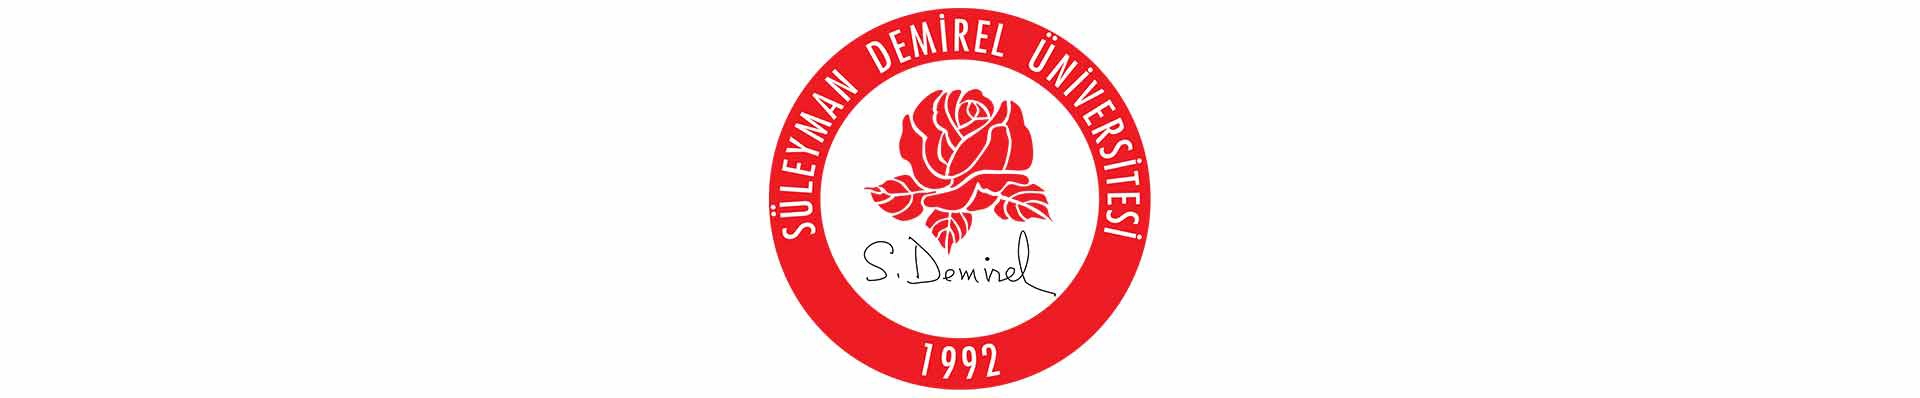 آزمون یوس دانشگاه سلیمان دمیرل (Suleyman Demirel University)